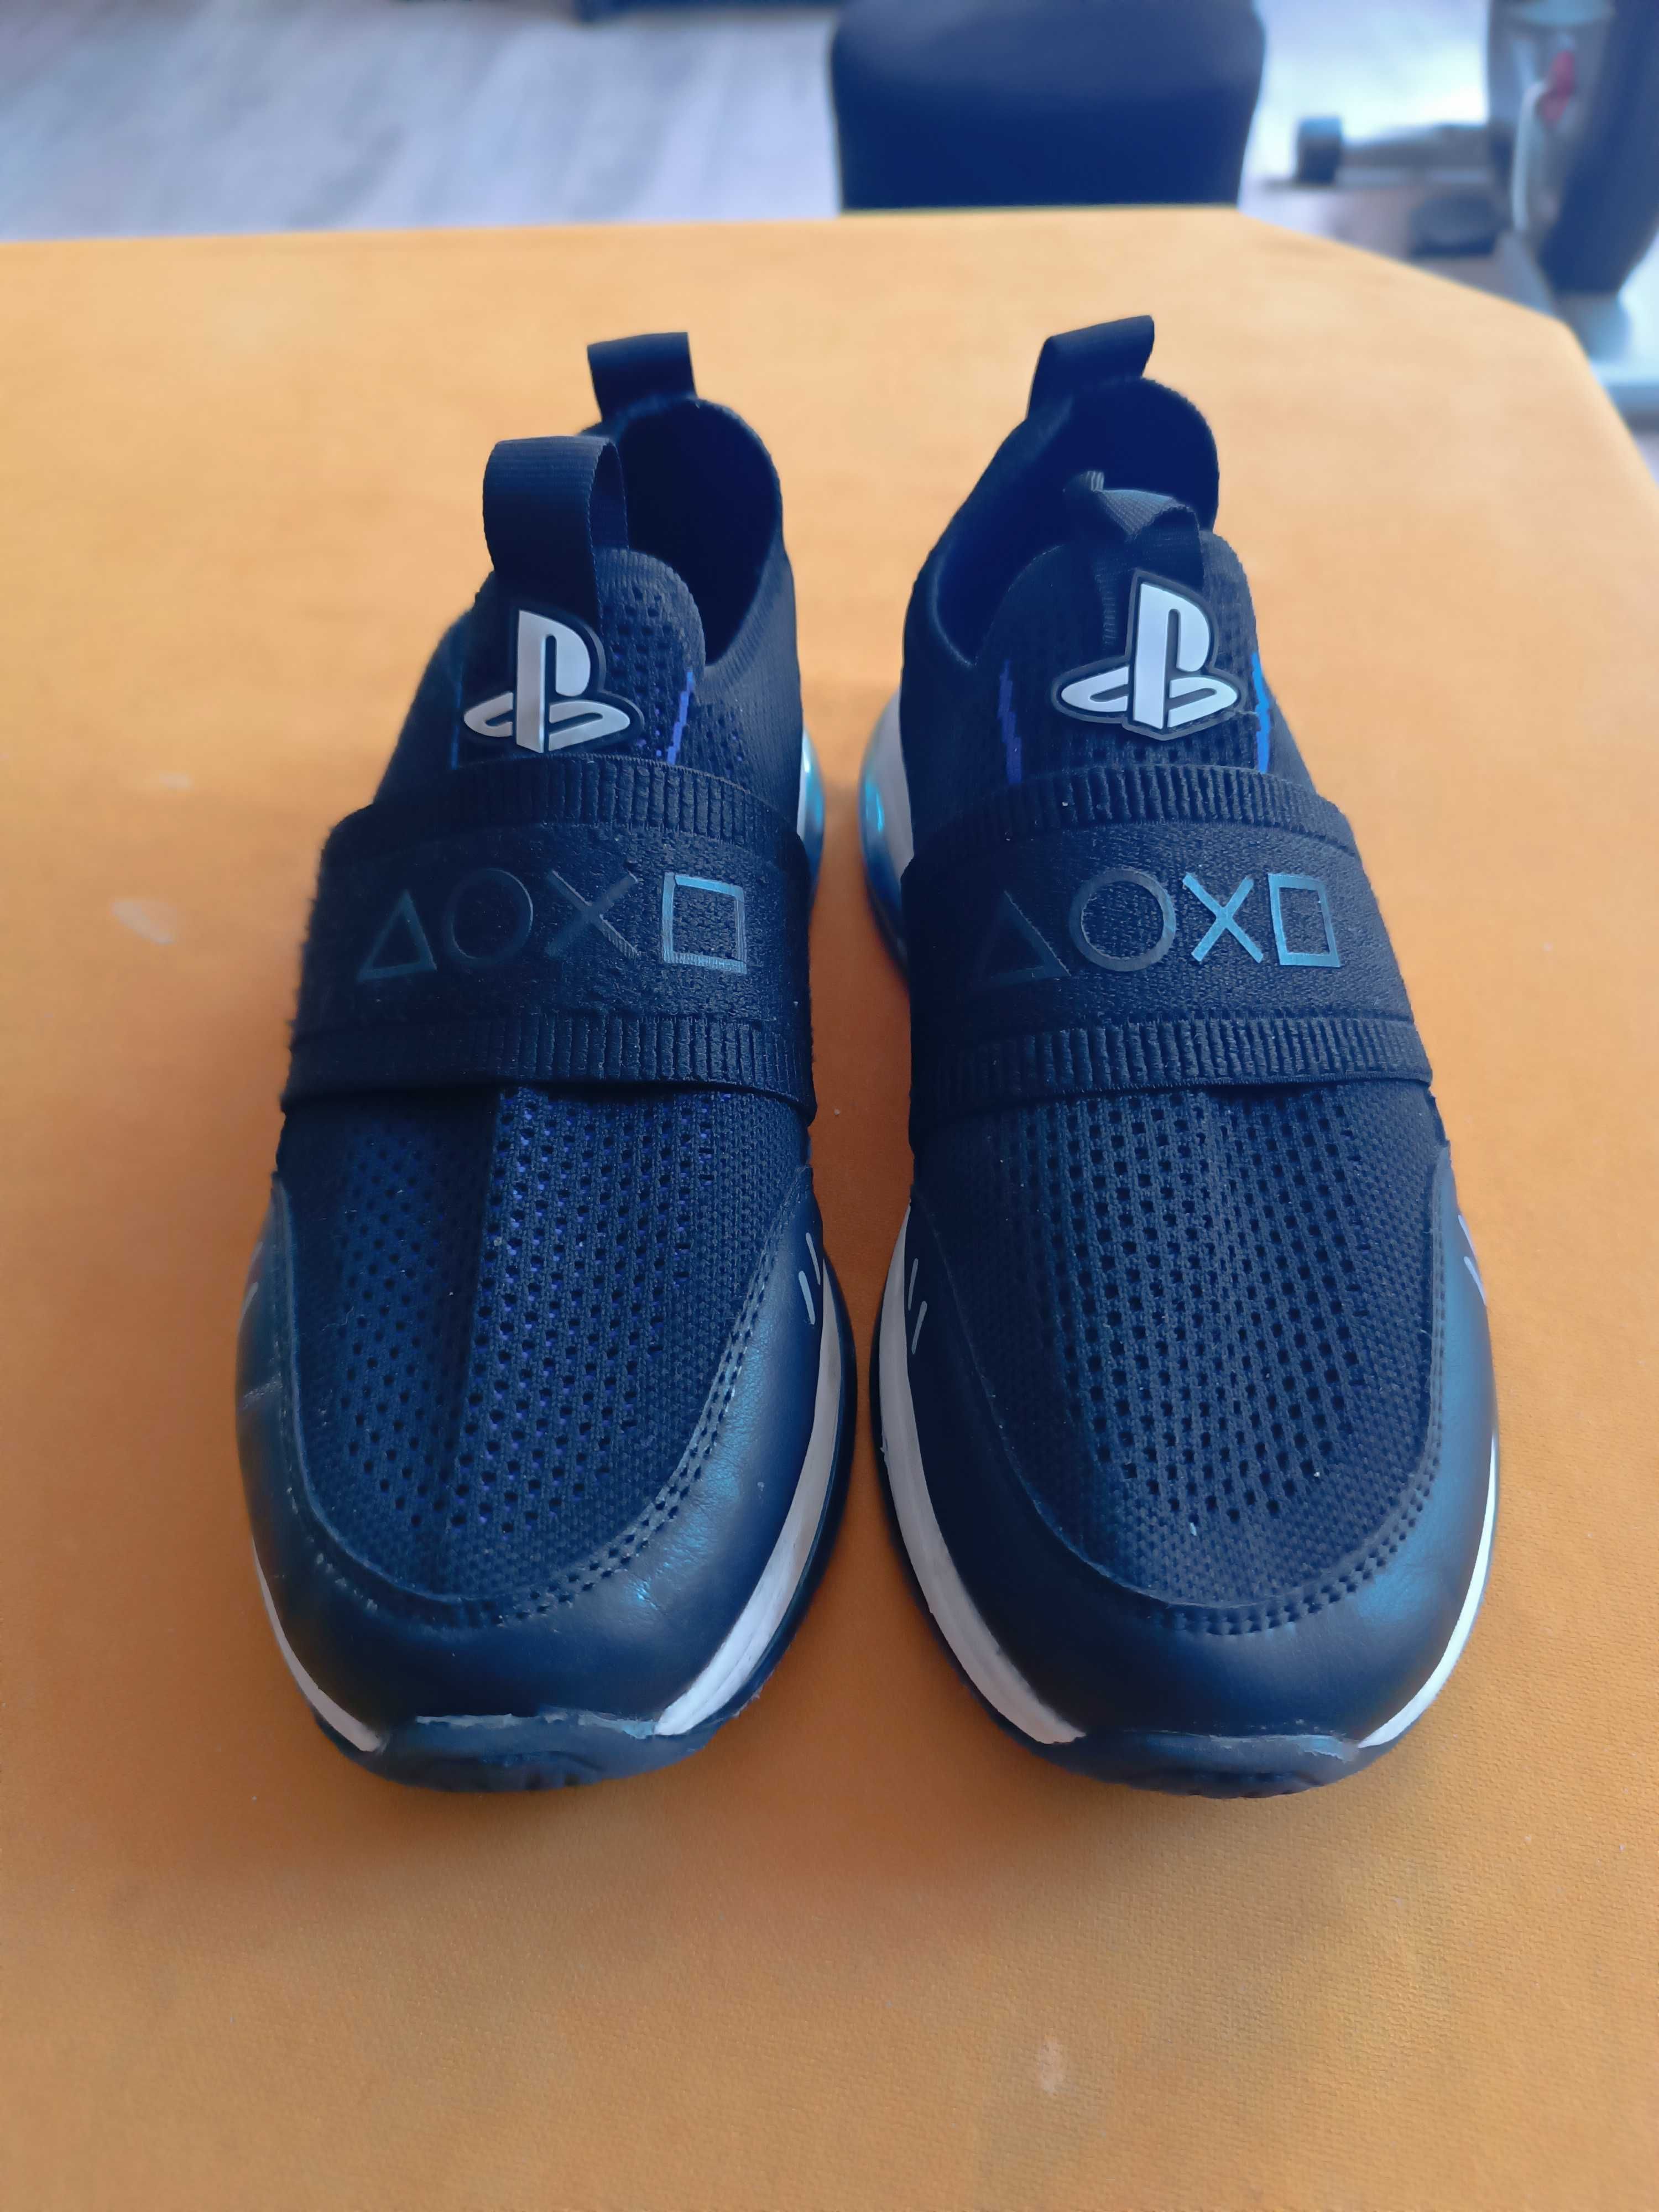 Adidasy buty Zara Sony Playstation rozmiar 37 stan bdb okazja!